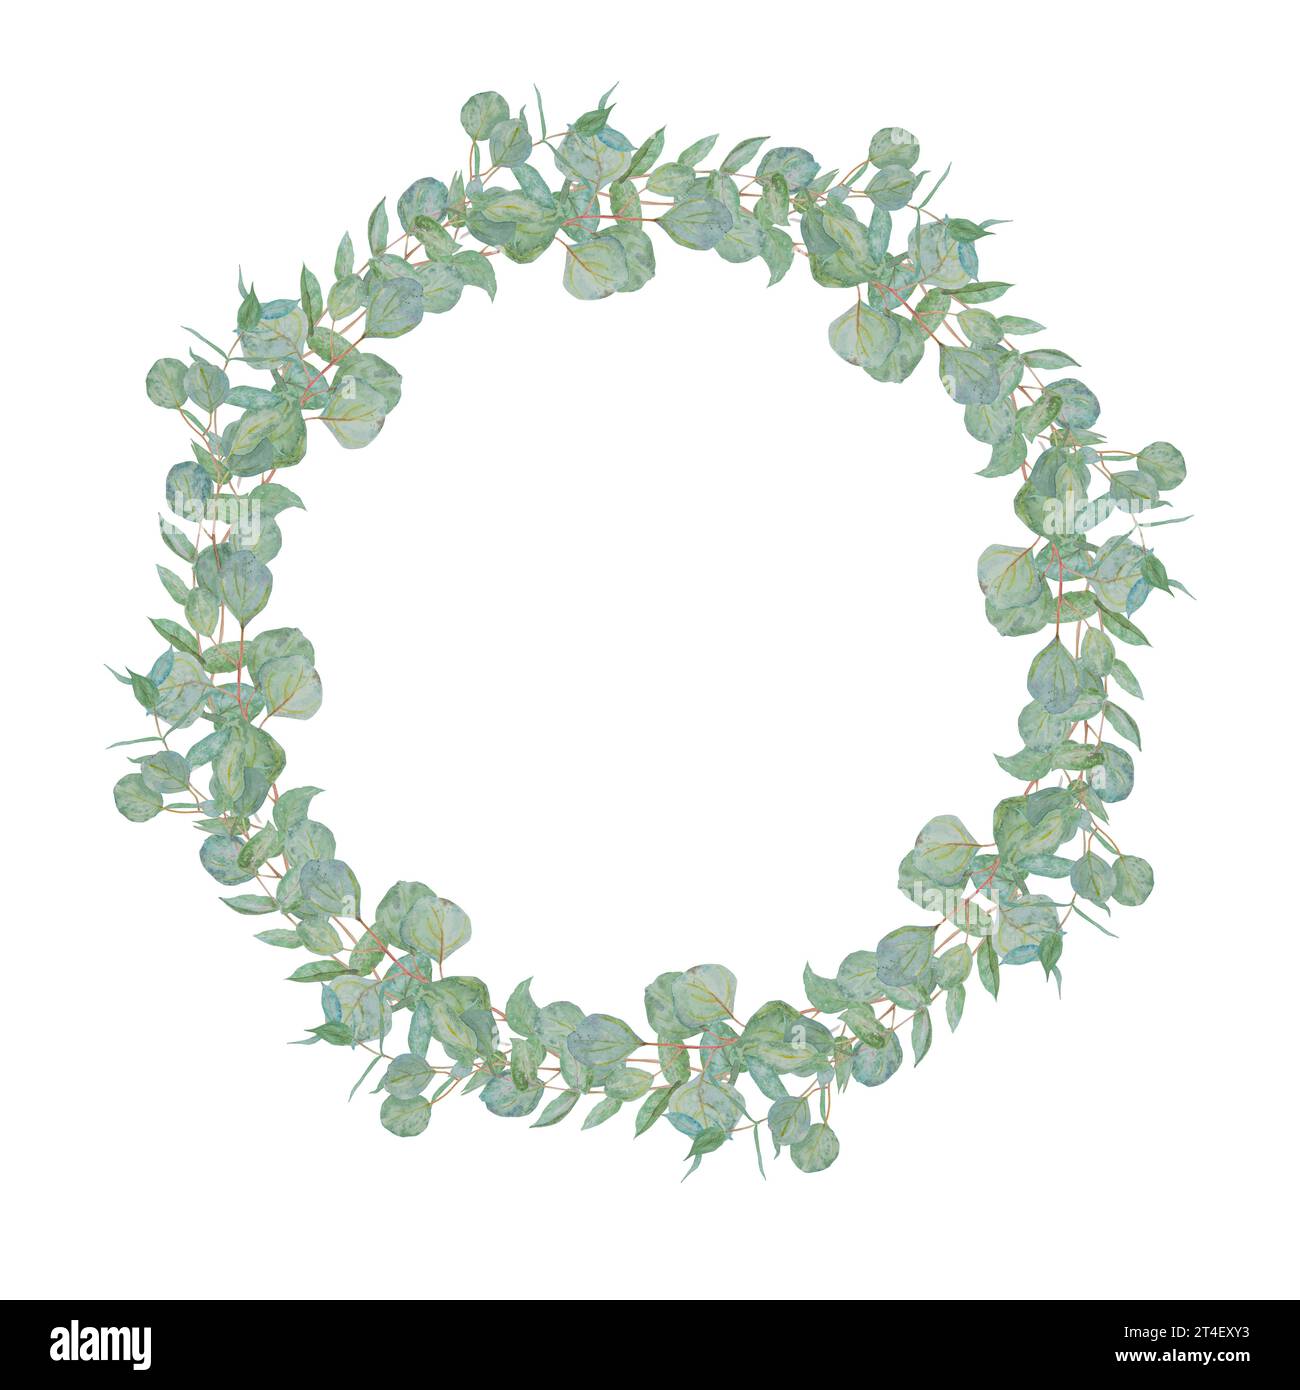 Cadre rond aquarelle de branches d'eucalyptus vert menthe. Illustration florale dessinée à la main pour invitations de mariage, produits imprimés, floristique, beauté Banque D'Images